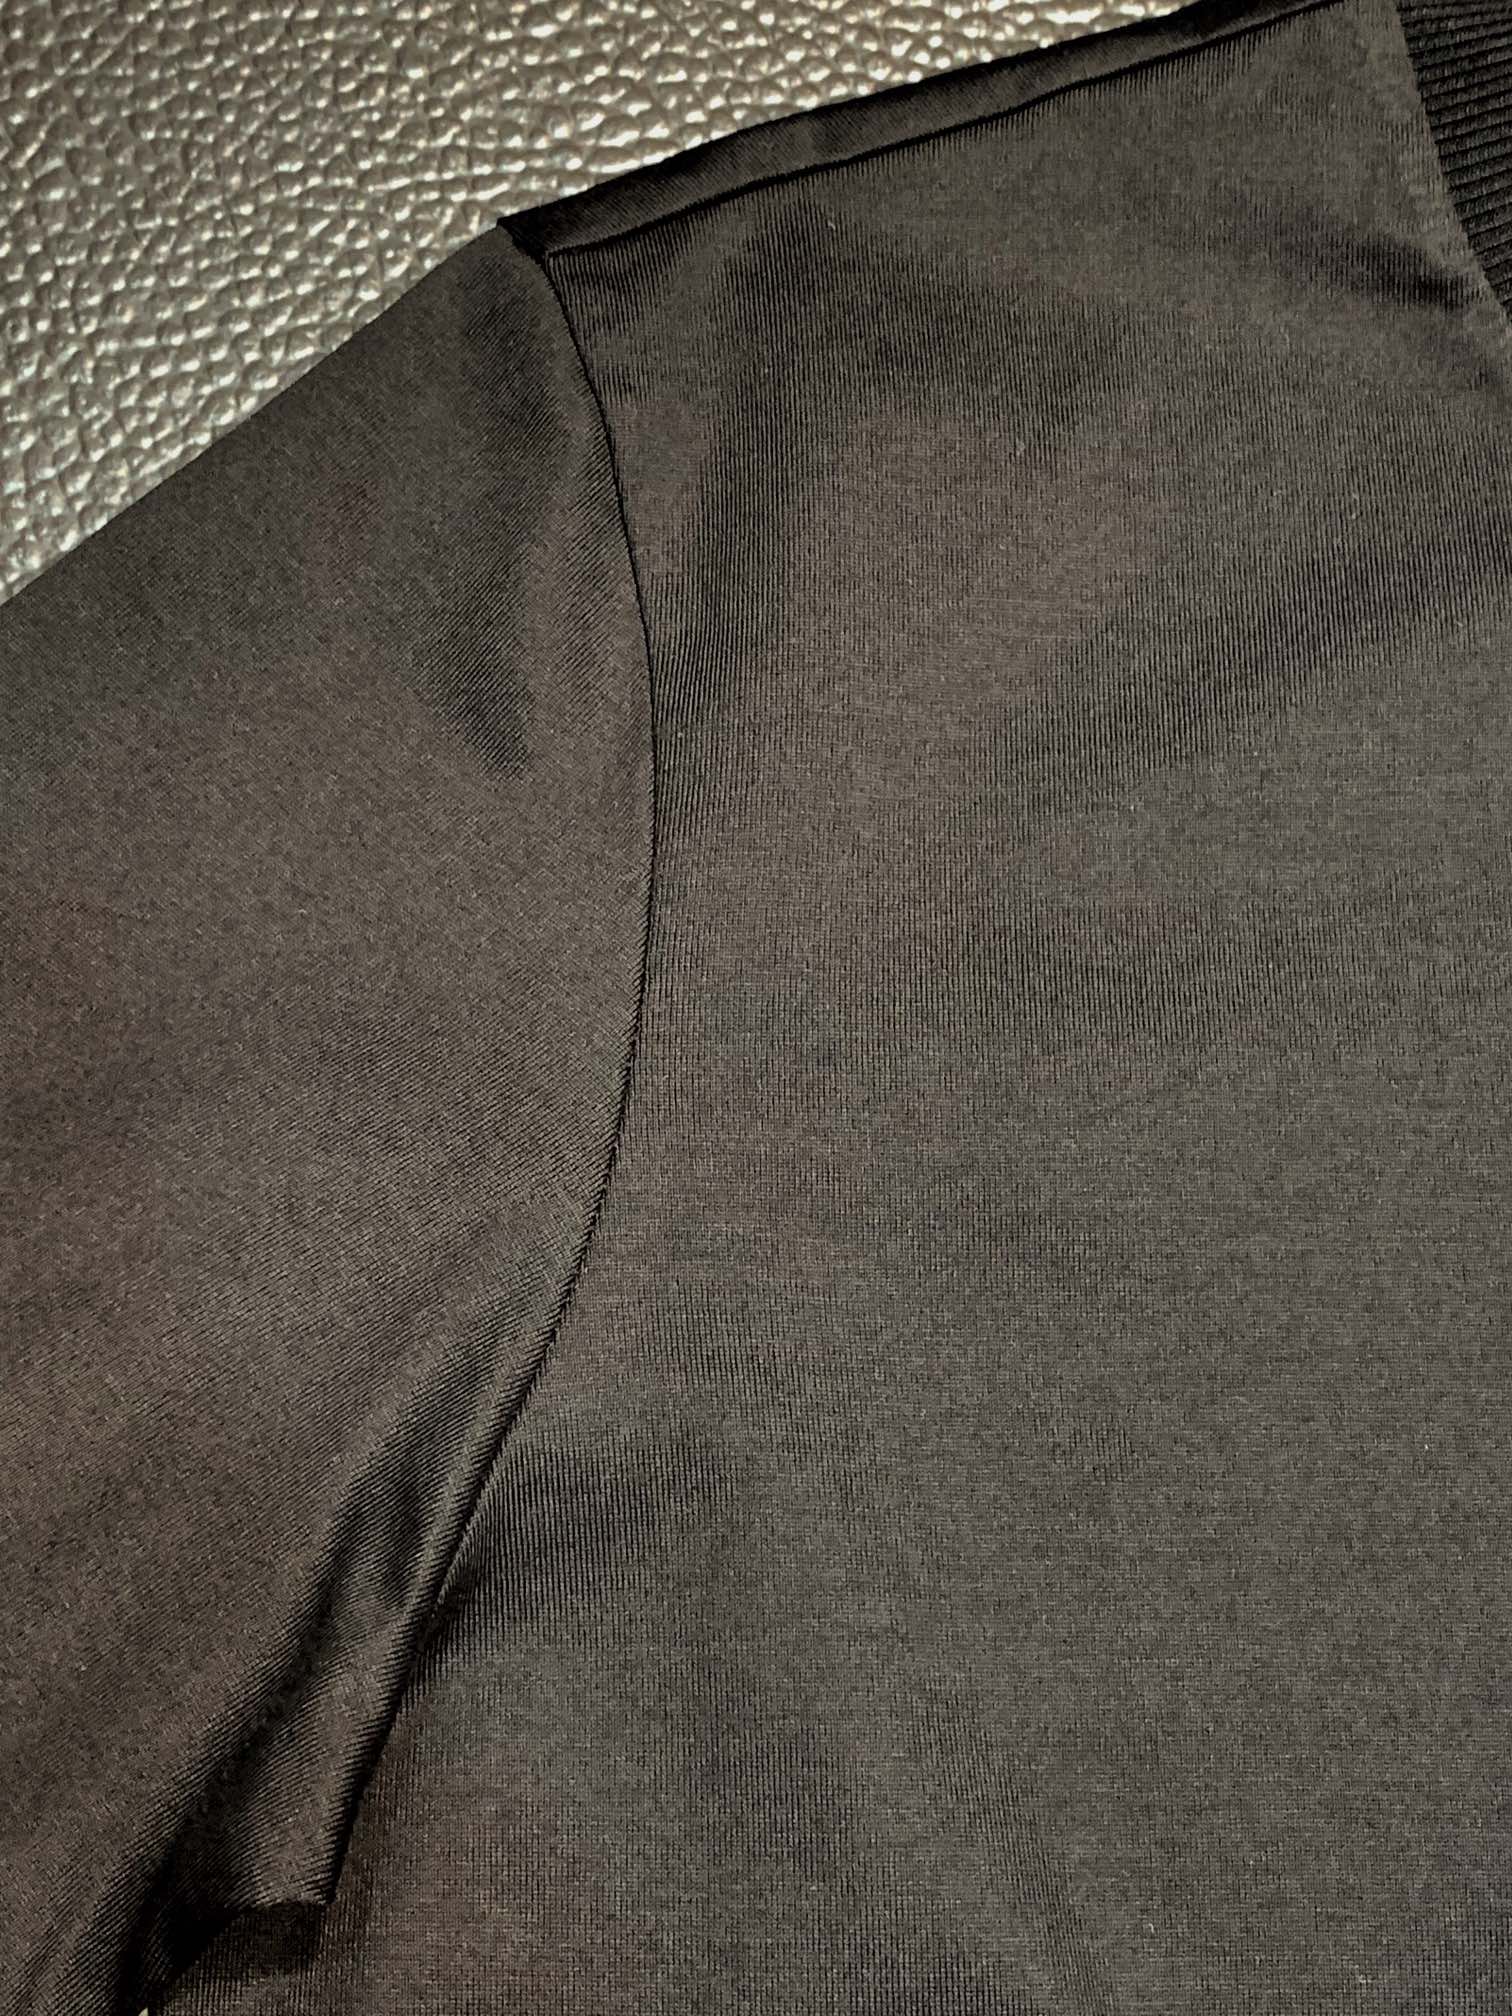 Moncler蒙口独家专供新款原单男士休闲短袖高端定制高版本时尚百搭爆款️️进口面料胸前logo图案设计